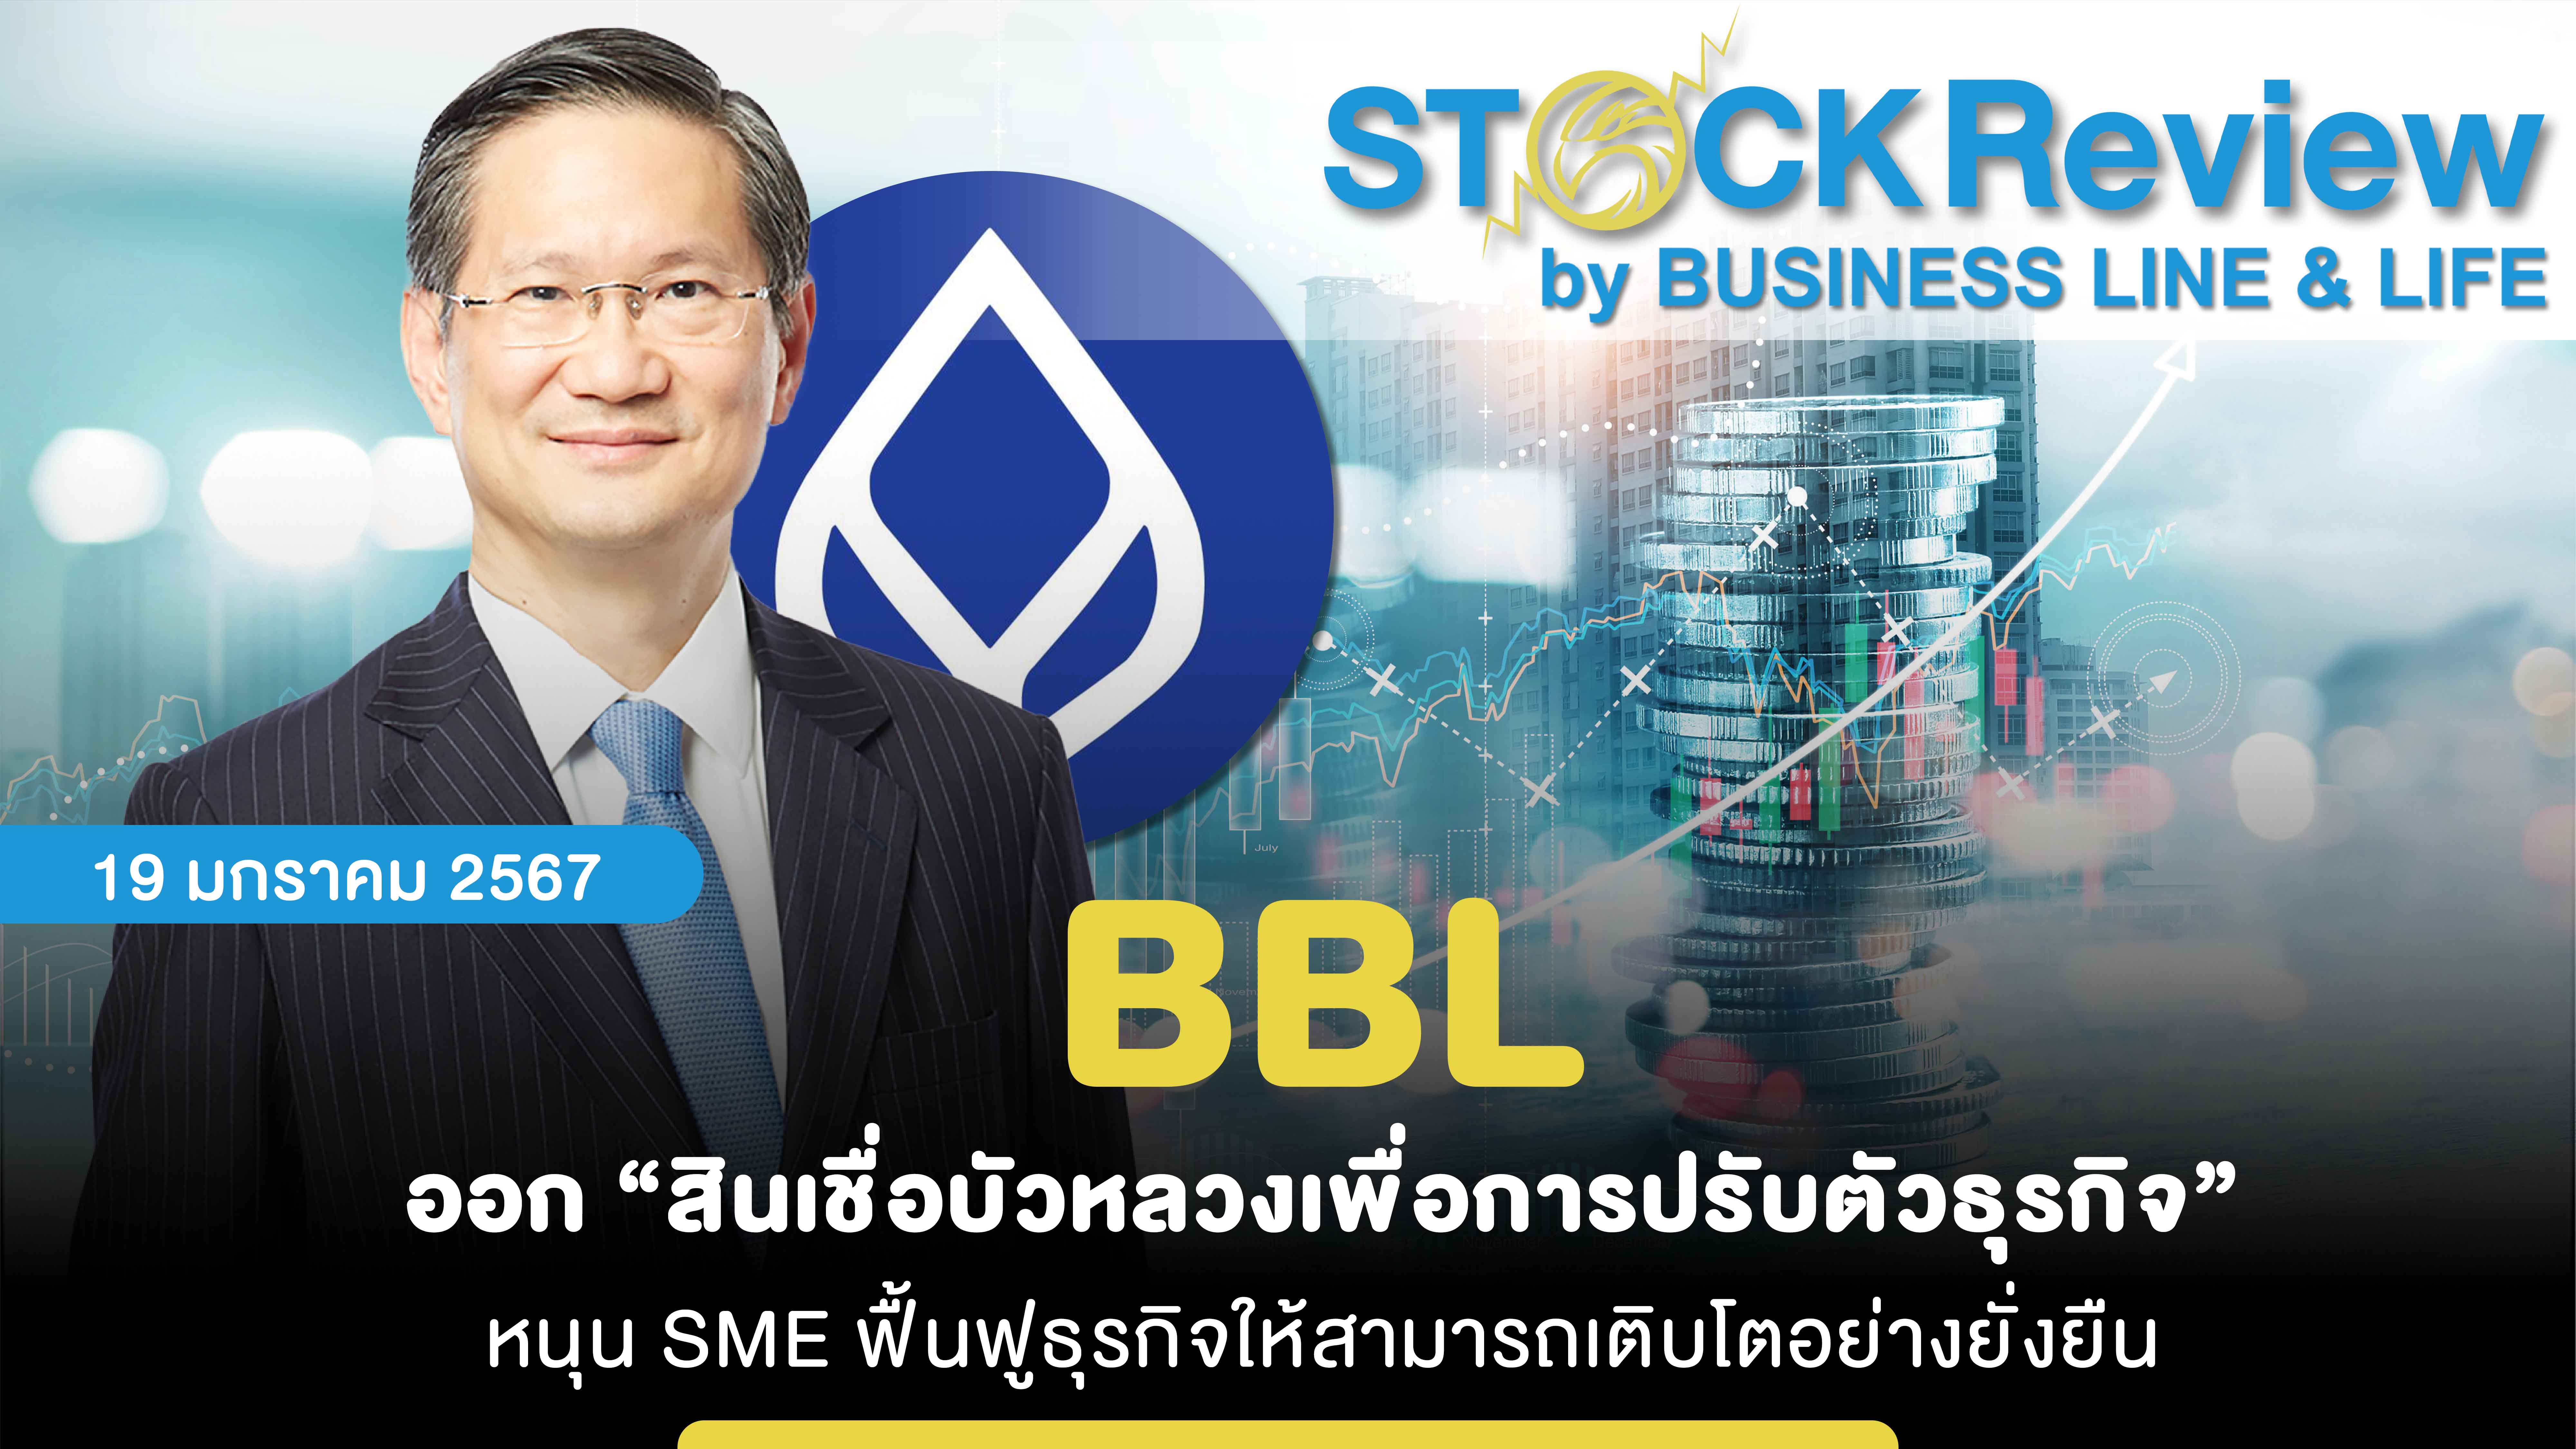 BBL ออก “สินเชื่อบัวหลวงเพื่อการปรับตัวธุรกิจ” หนุน SME ฟื้นฟูธุรกิจให้สามารถเติบโตอย่างยั่งยืน